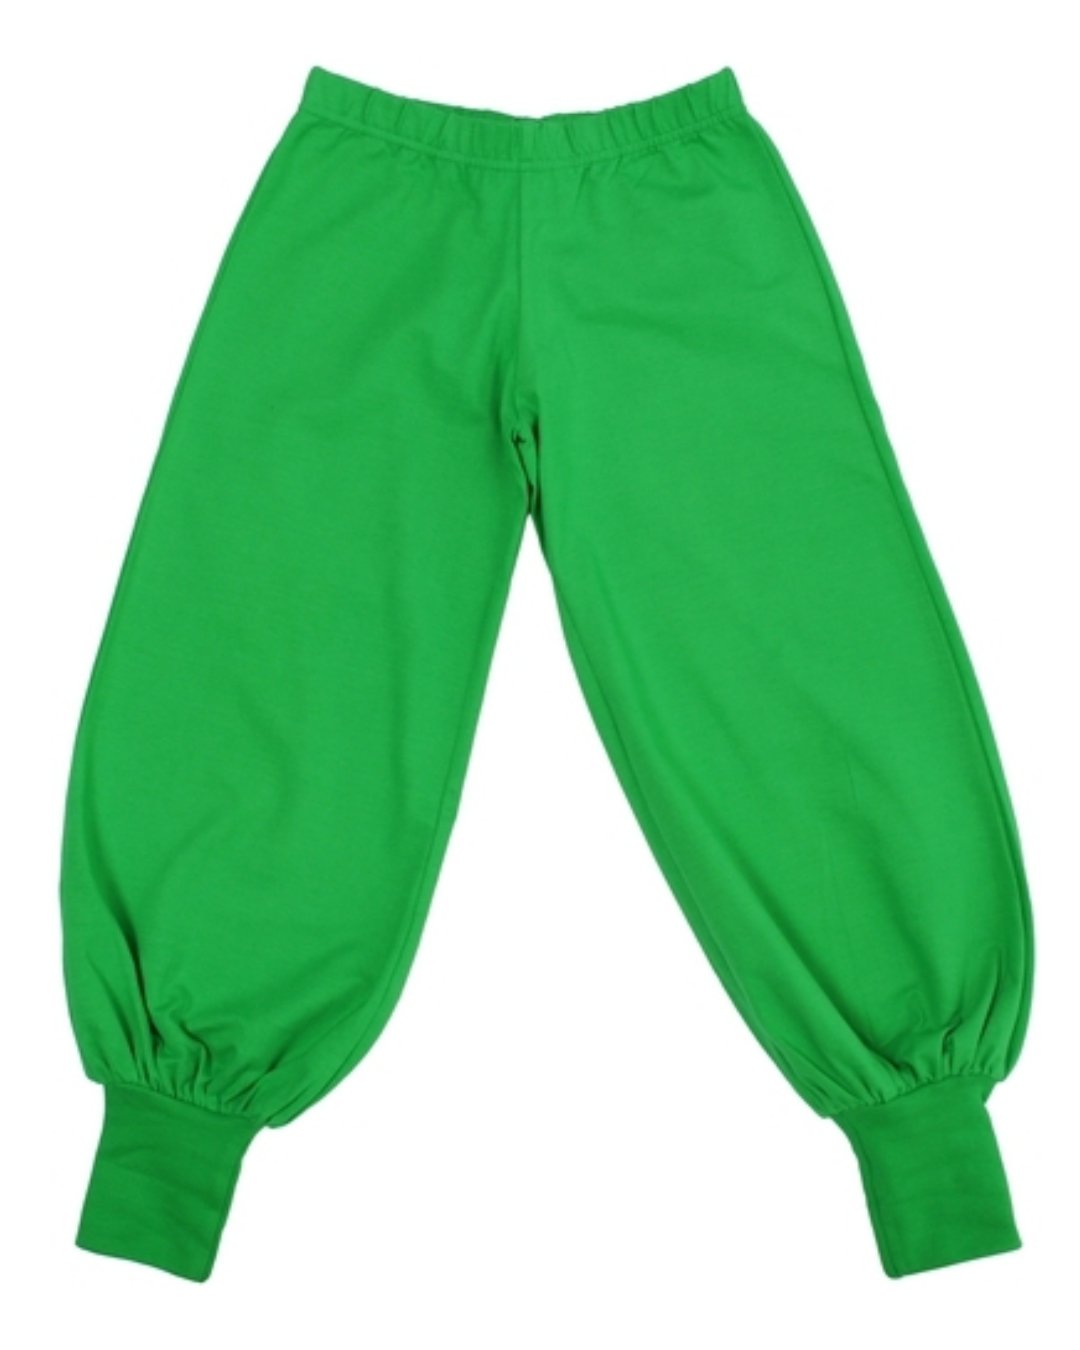 Grüne Hose für Kinder aus Biobaumwolle von DUNS Sweden